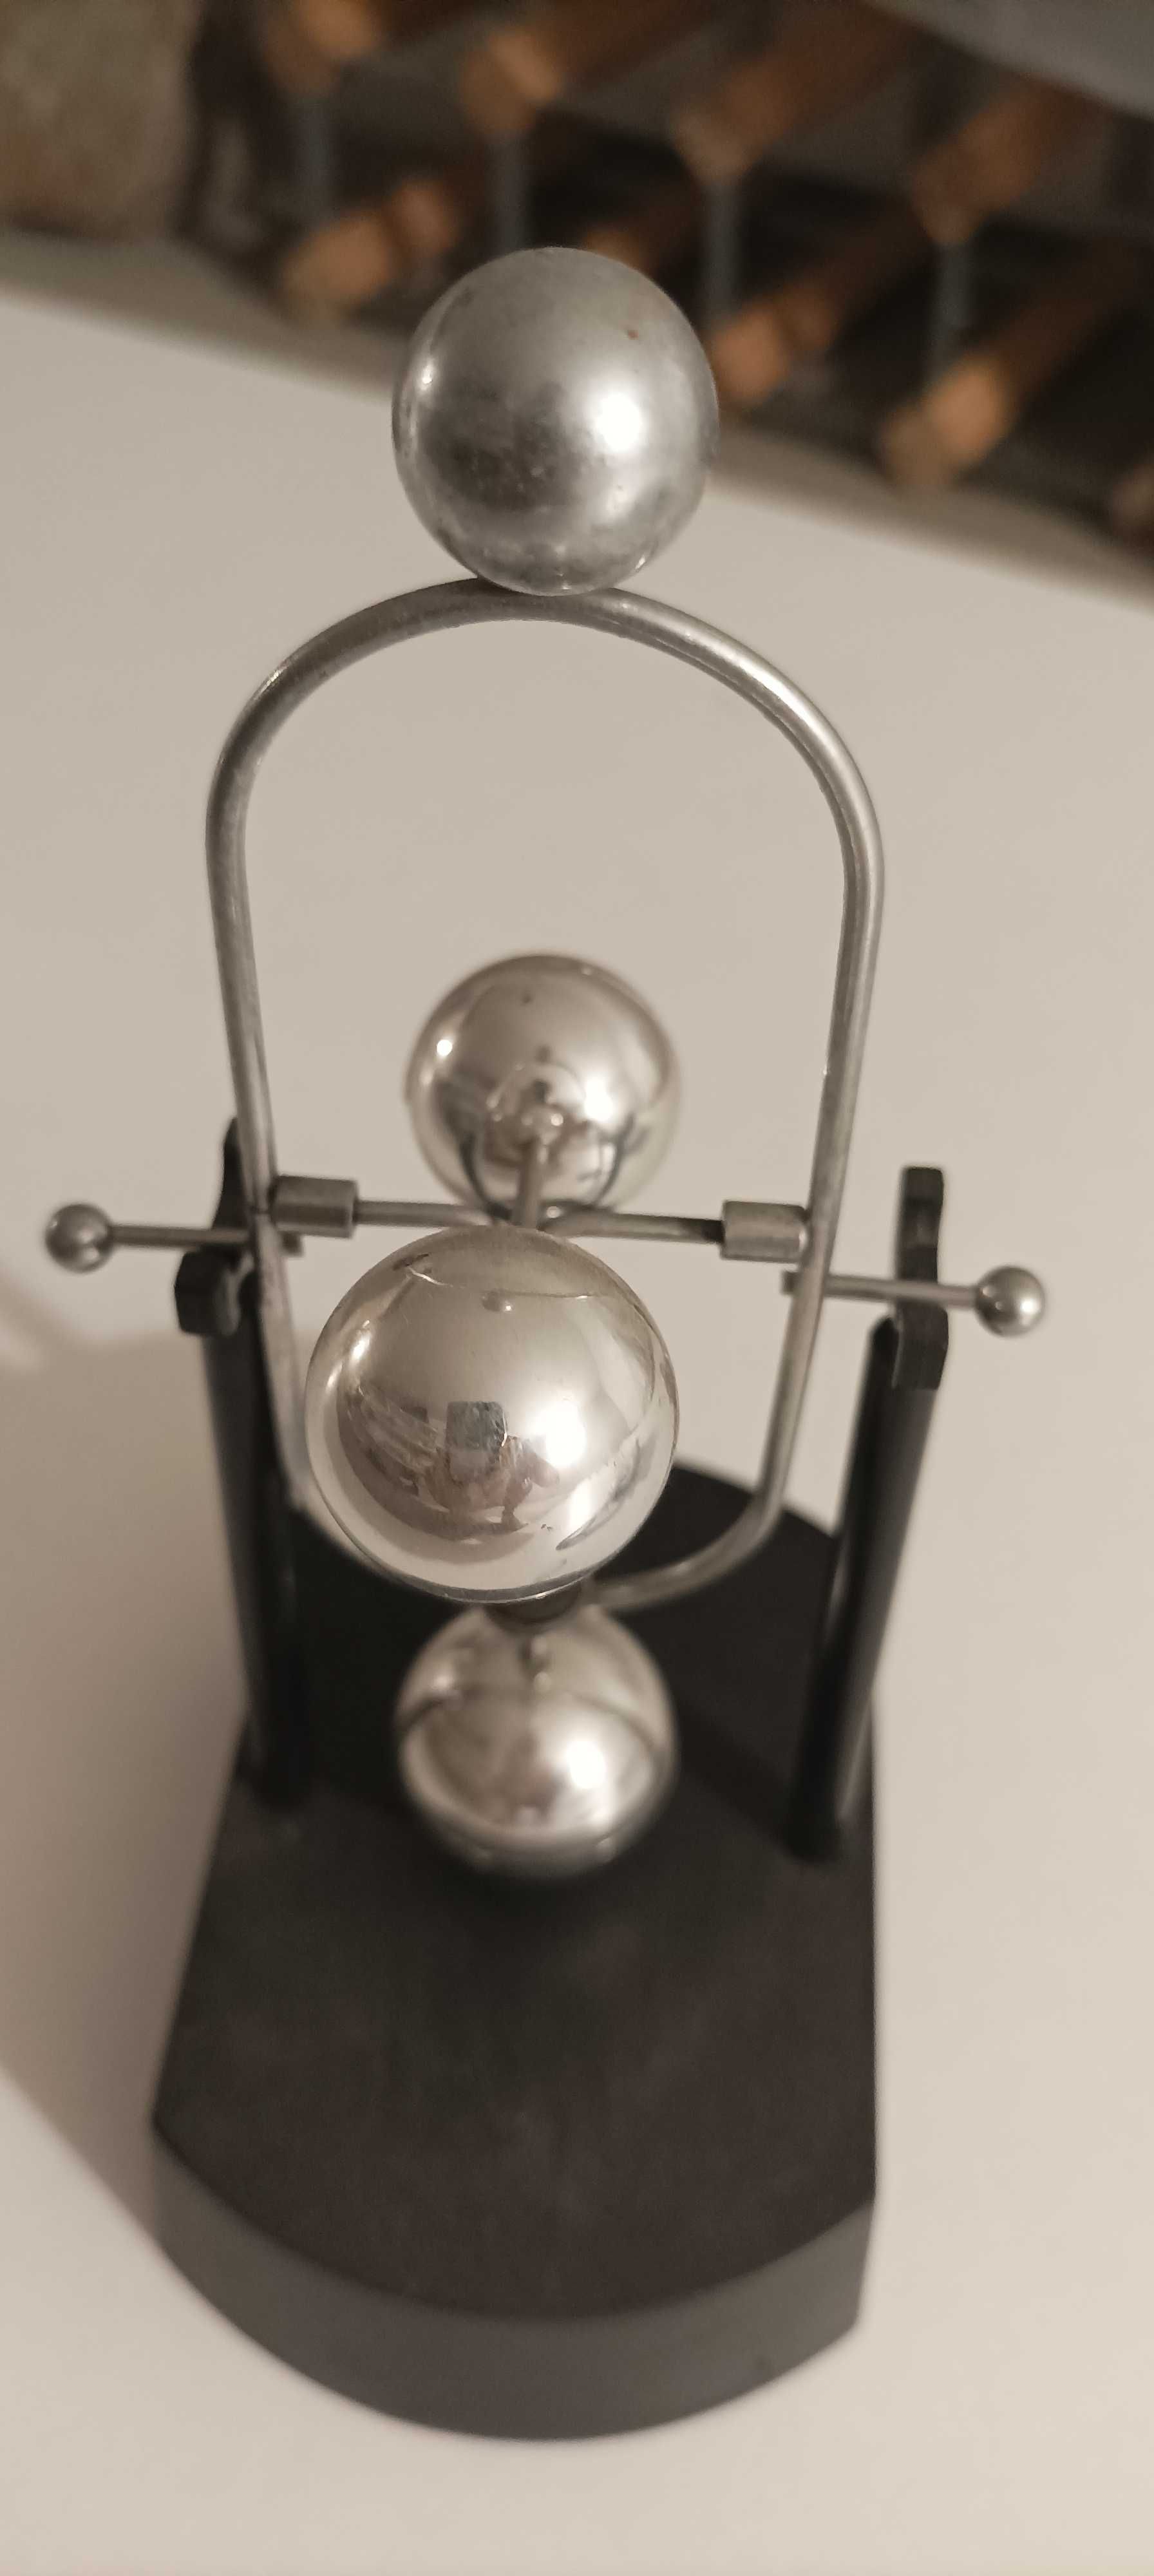 Pêndulo de metal constantemente rotação (Newton)